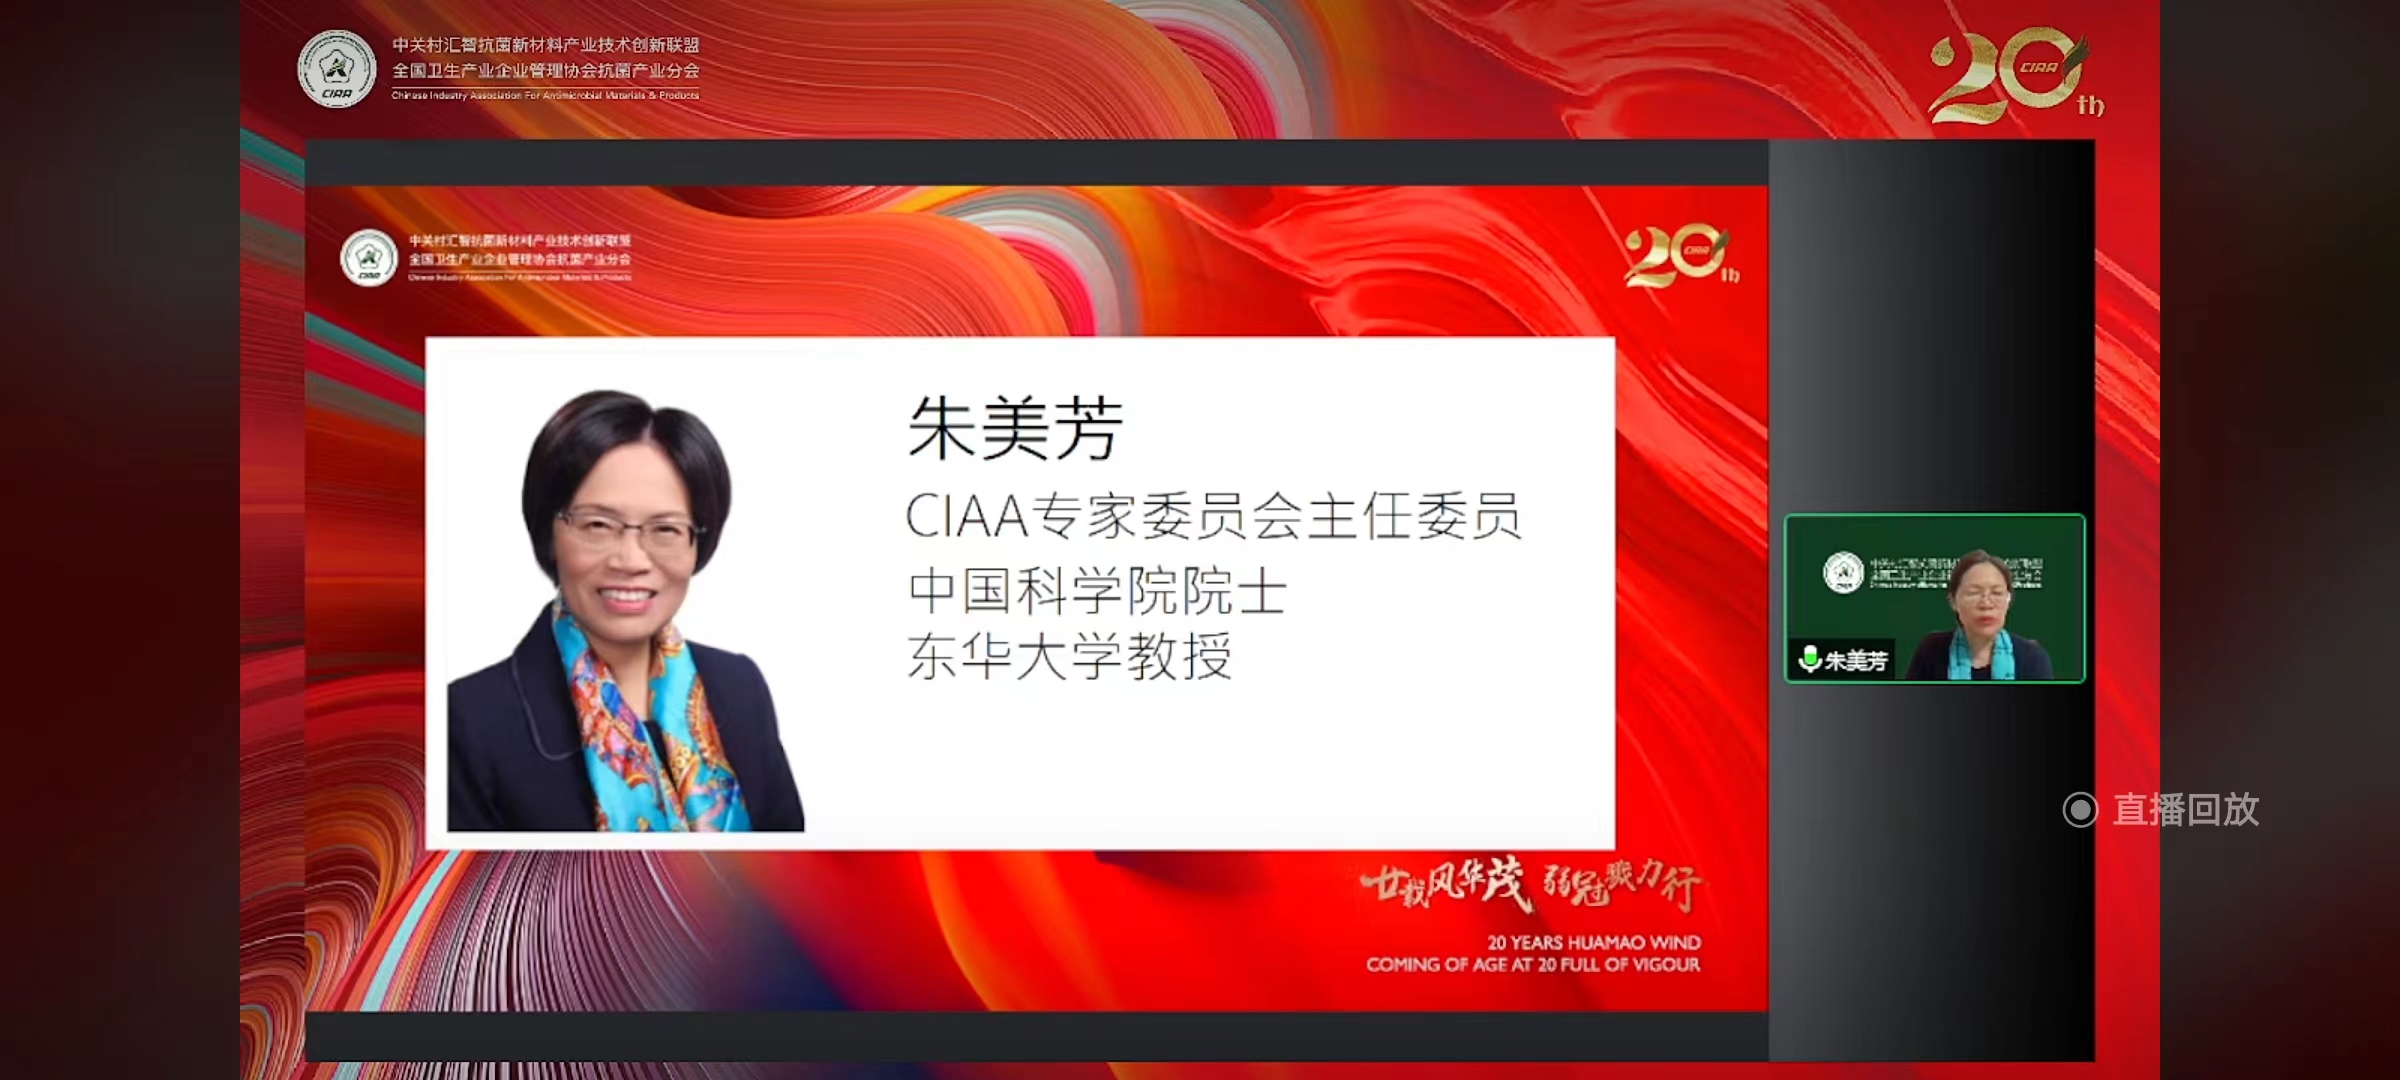 CIAA专家委员会主任委员、中国科学院院士朱美芳教授出席CIAA二十周年纪念会并致辞